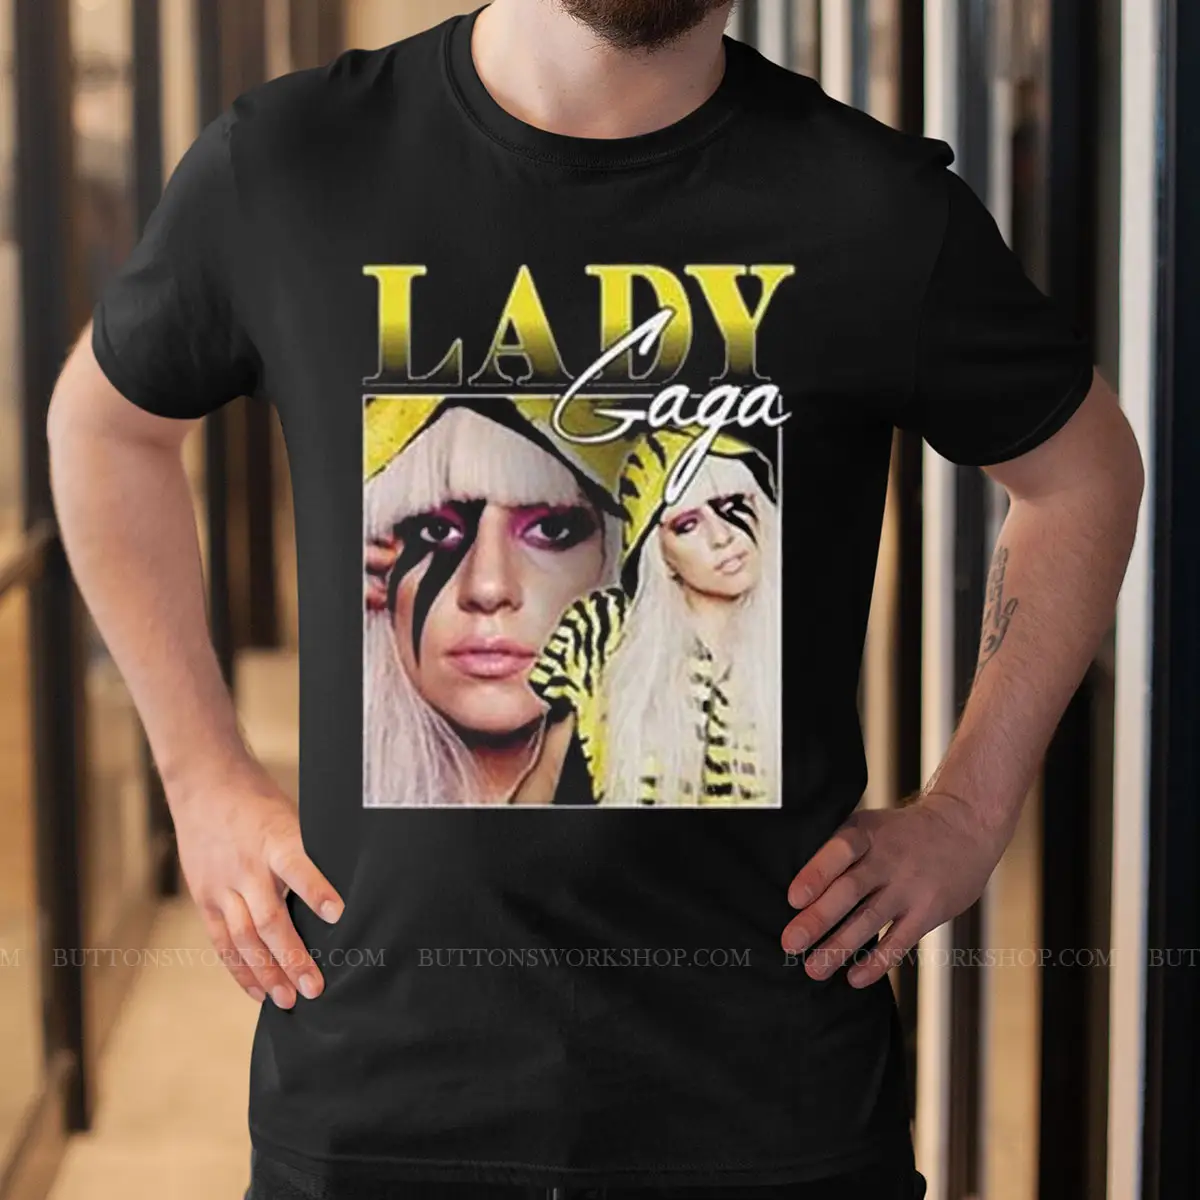 Lady Gaga T-Shirt Unisex Tshirt